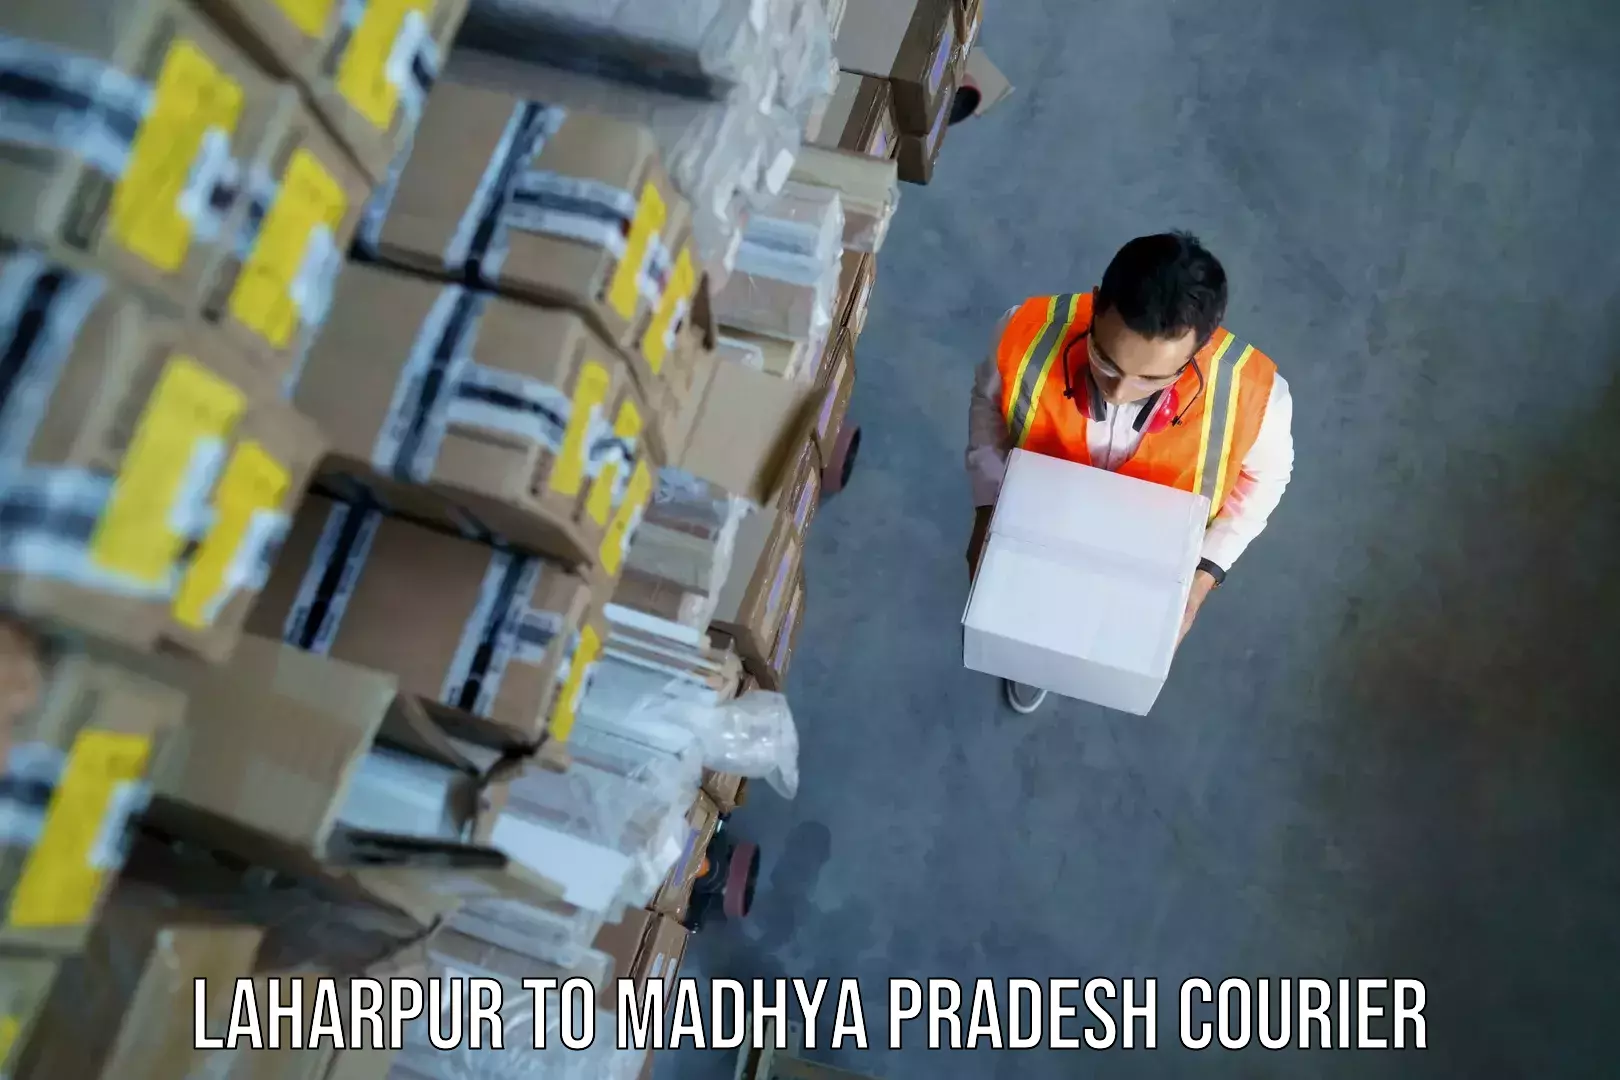 Overnight luggage courier Laharpur to Madhya Pradesh